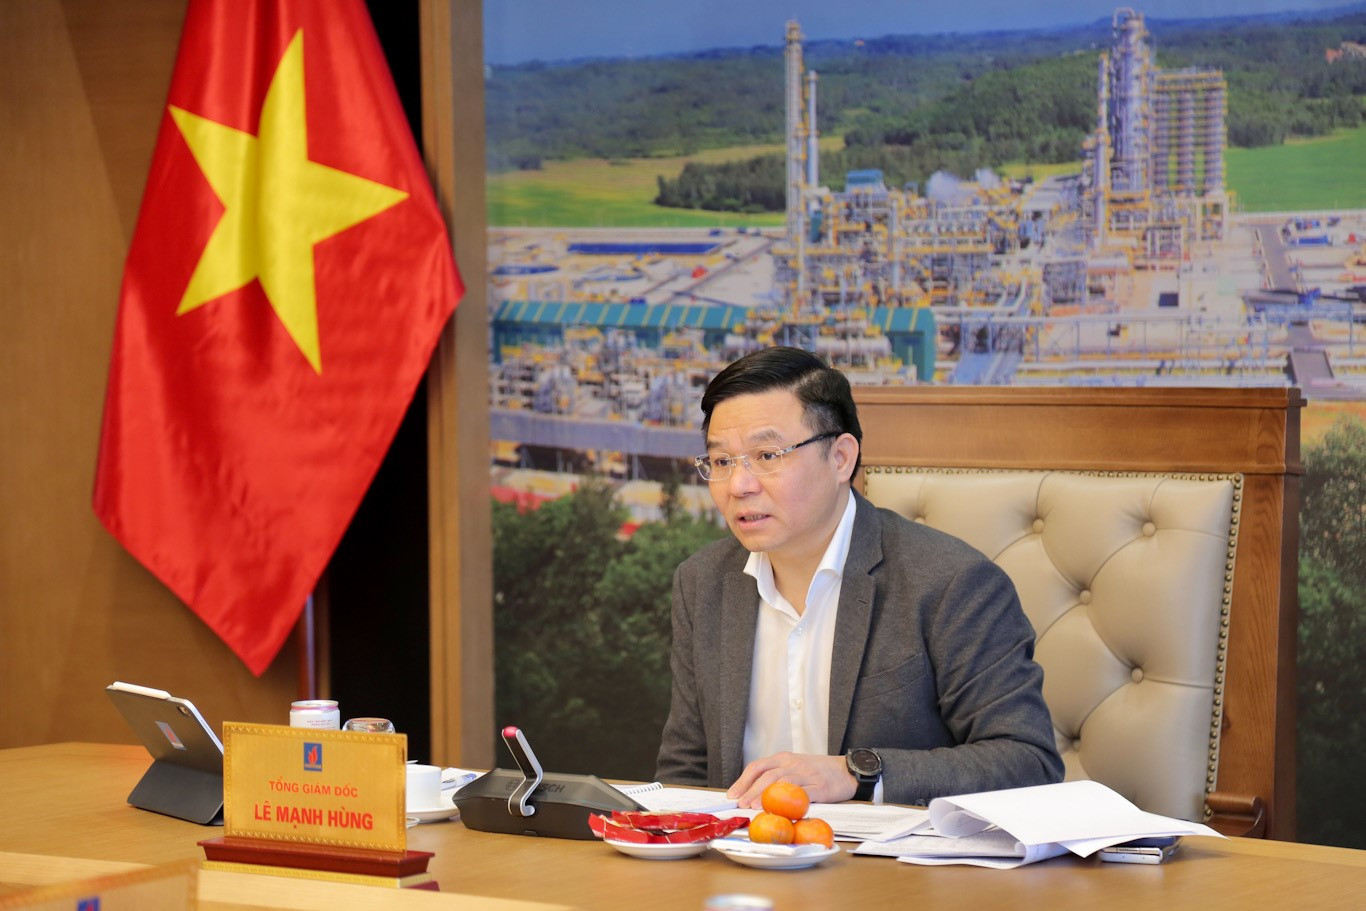 Tổng giám đốc Petrovietnam Lê Mạnh Hùng phát biểu kết luận Hội nghị.